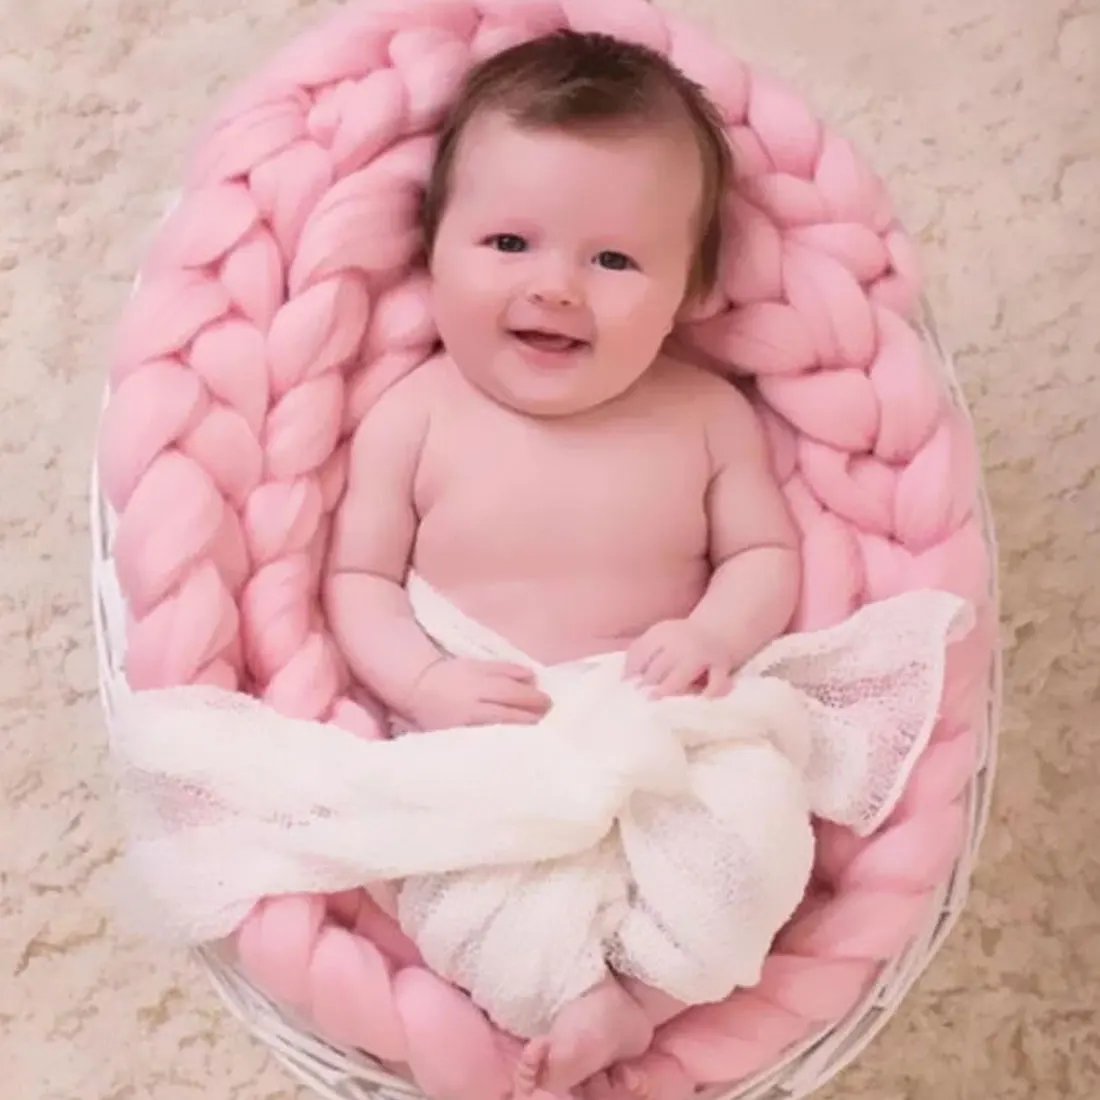 45 см X 50 см новорожденный младенец покрывало для фото искусственный мех ковер одеяло s плюшевые реквизиты для фона фотографии корзина наполнитель